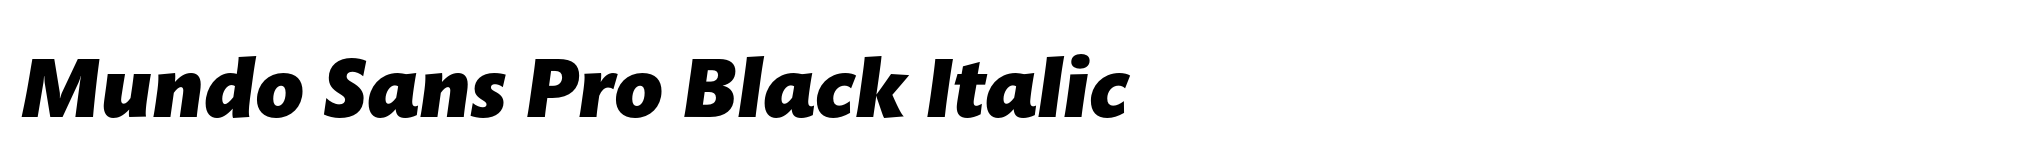 Mundo Sans Pro Black Italic image